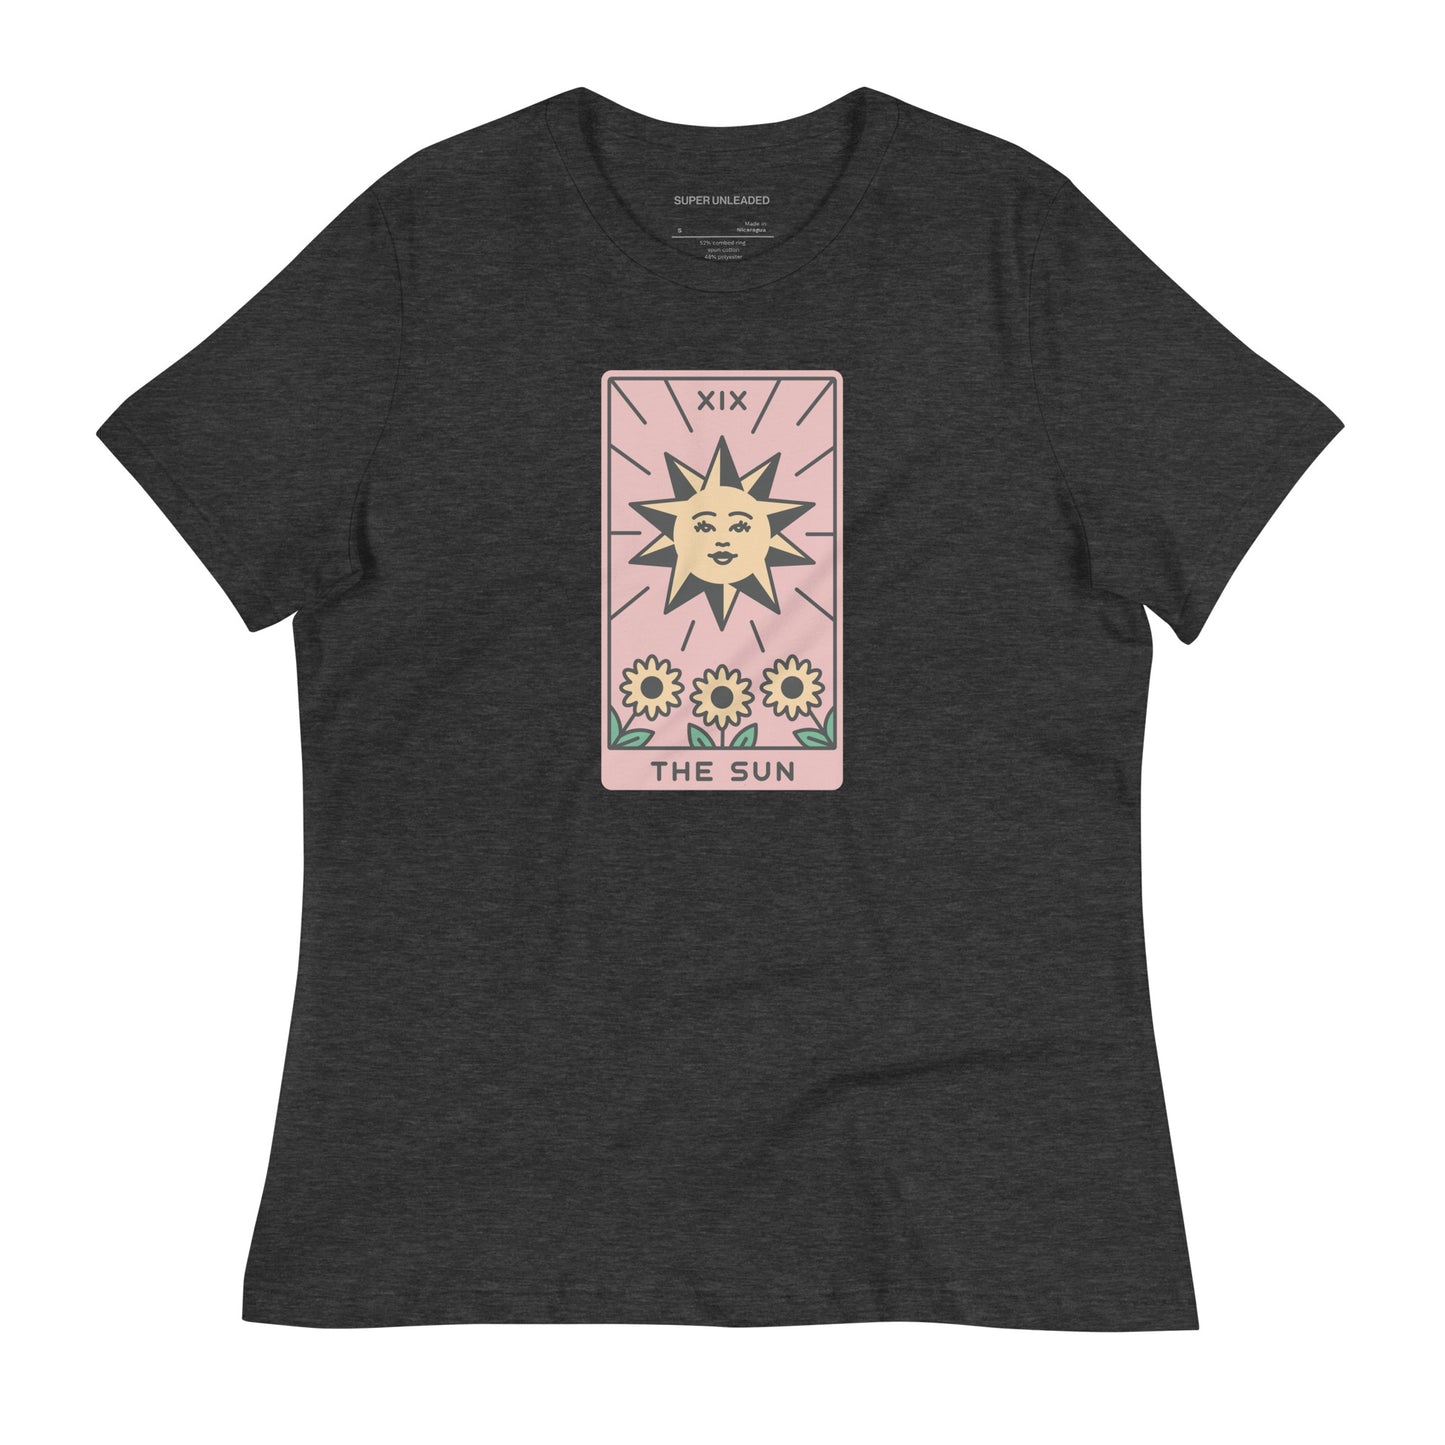 The Sun T-Shirt